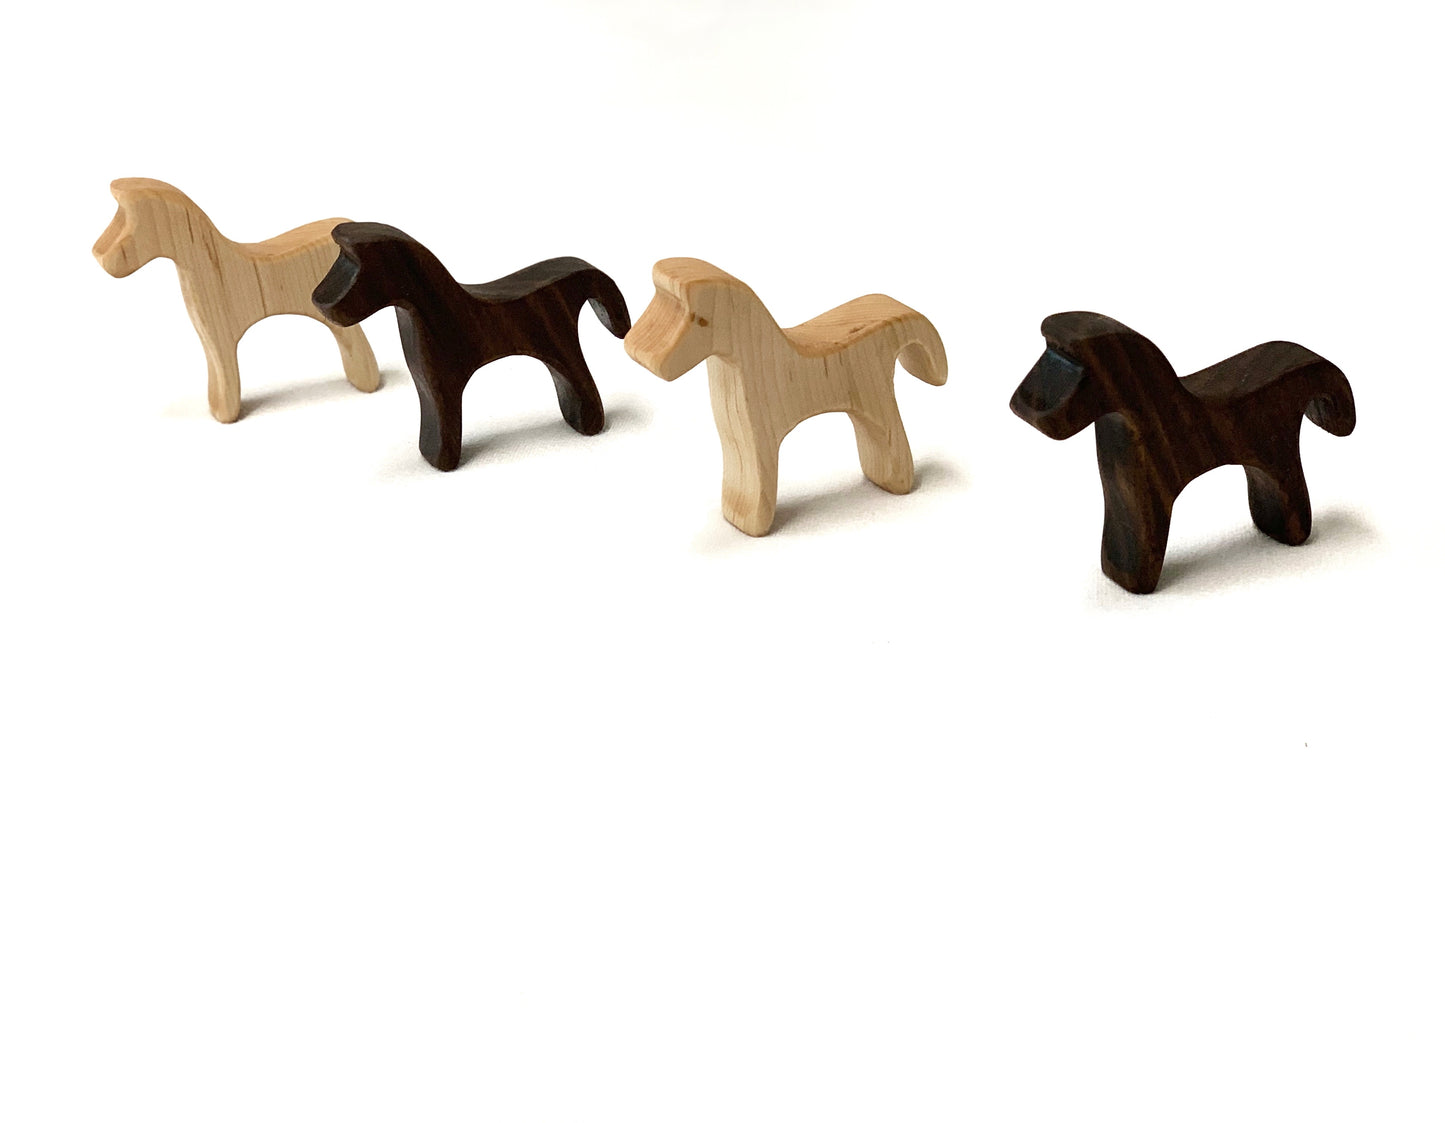 Farm Animal Wood Toy Figurines